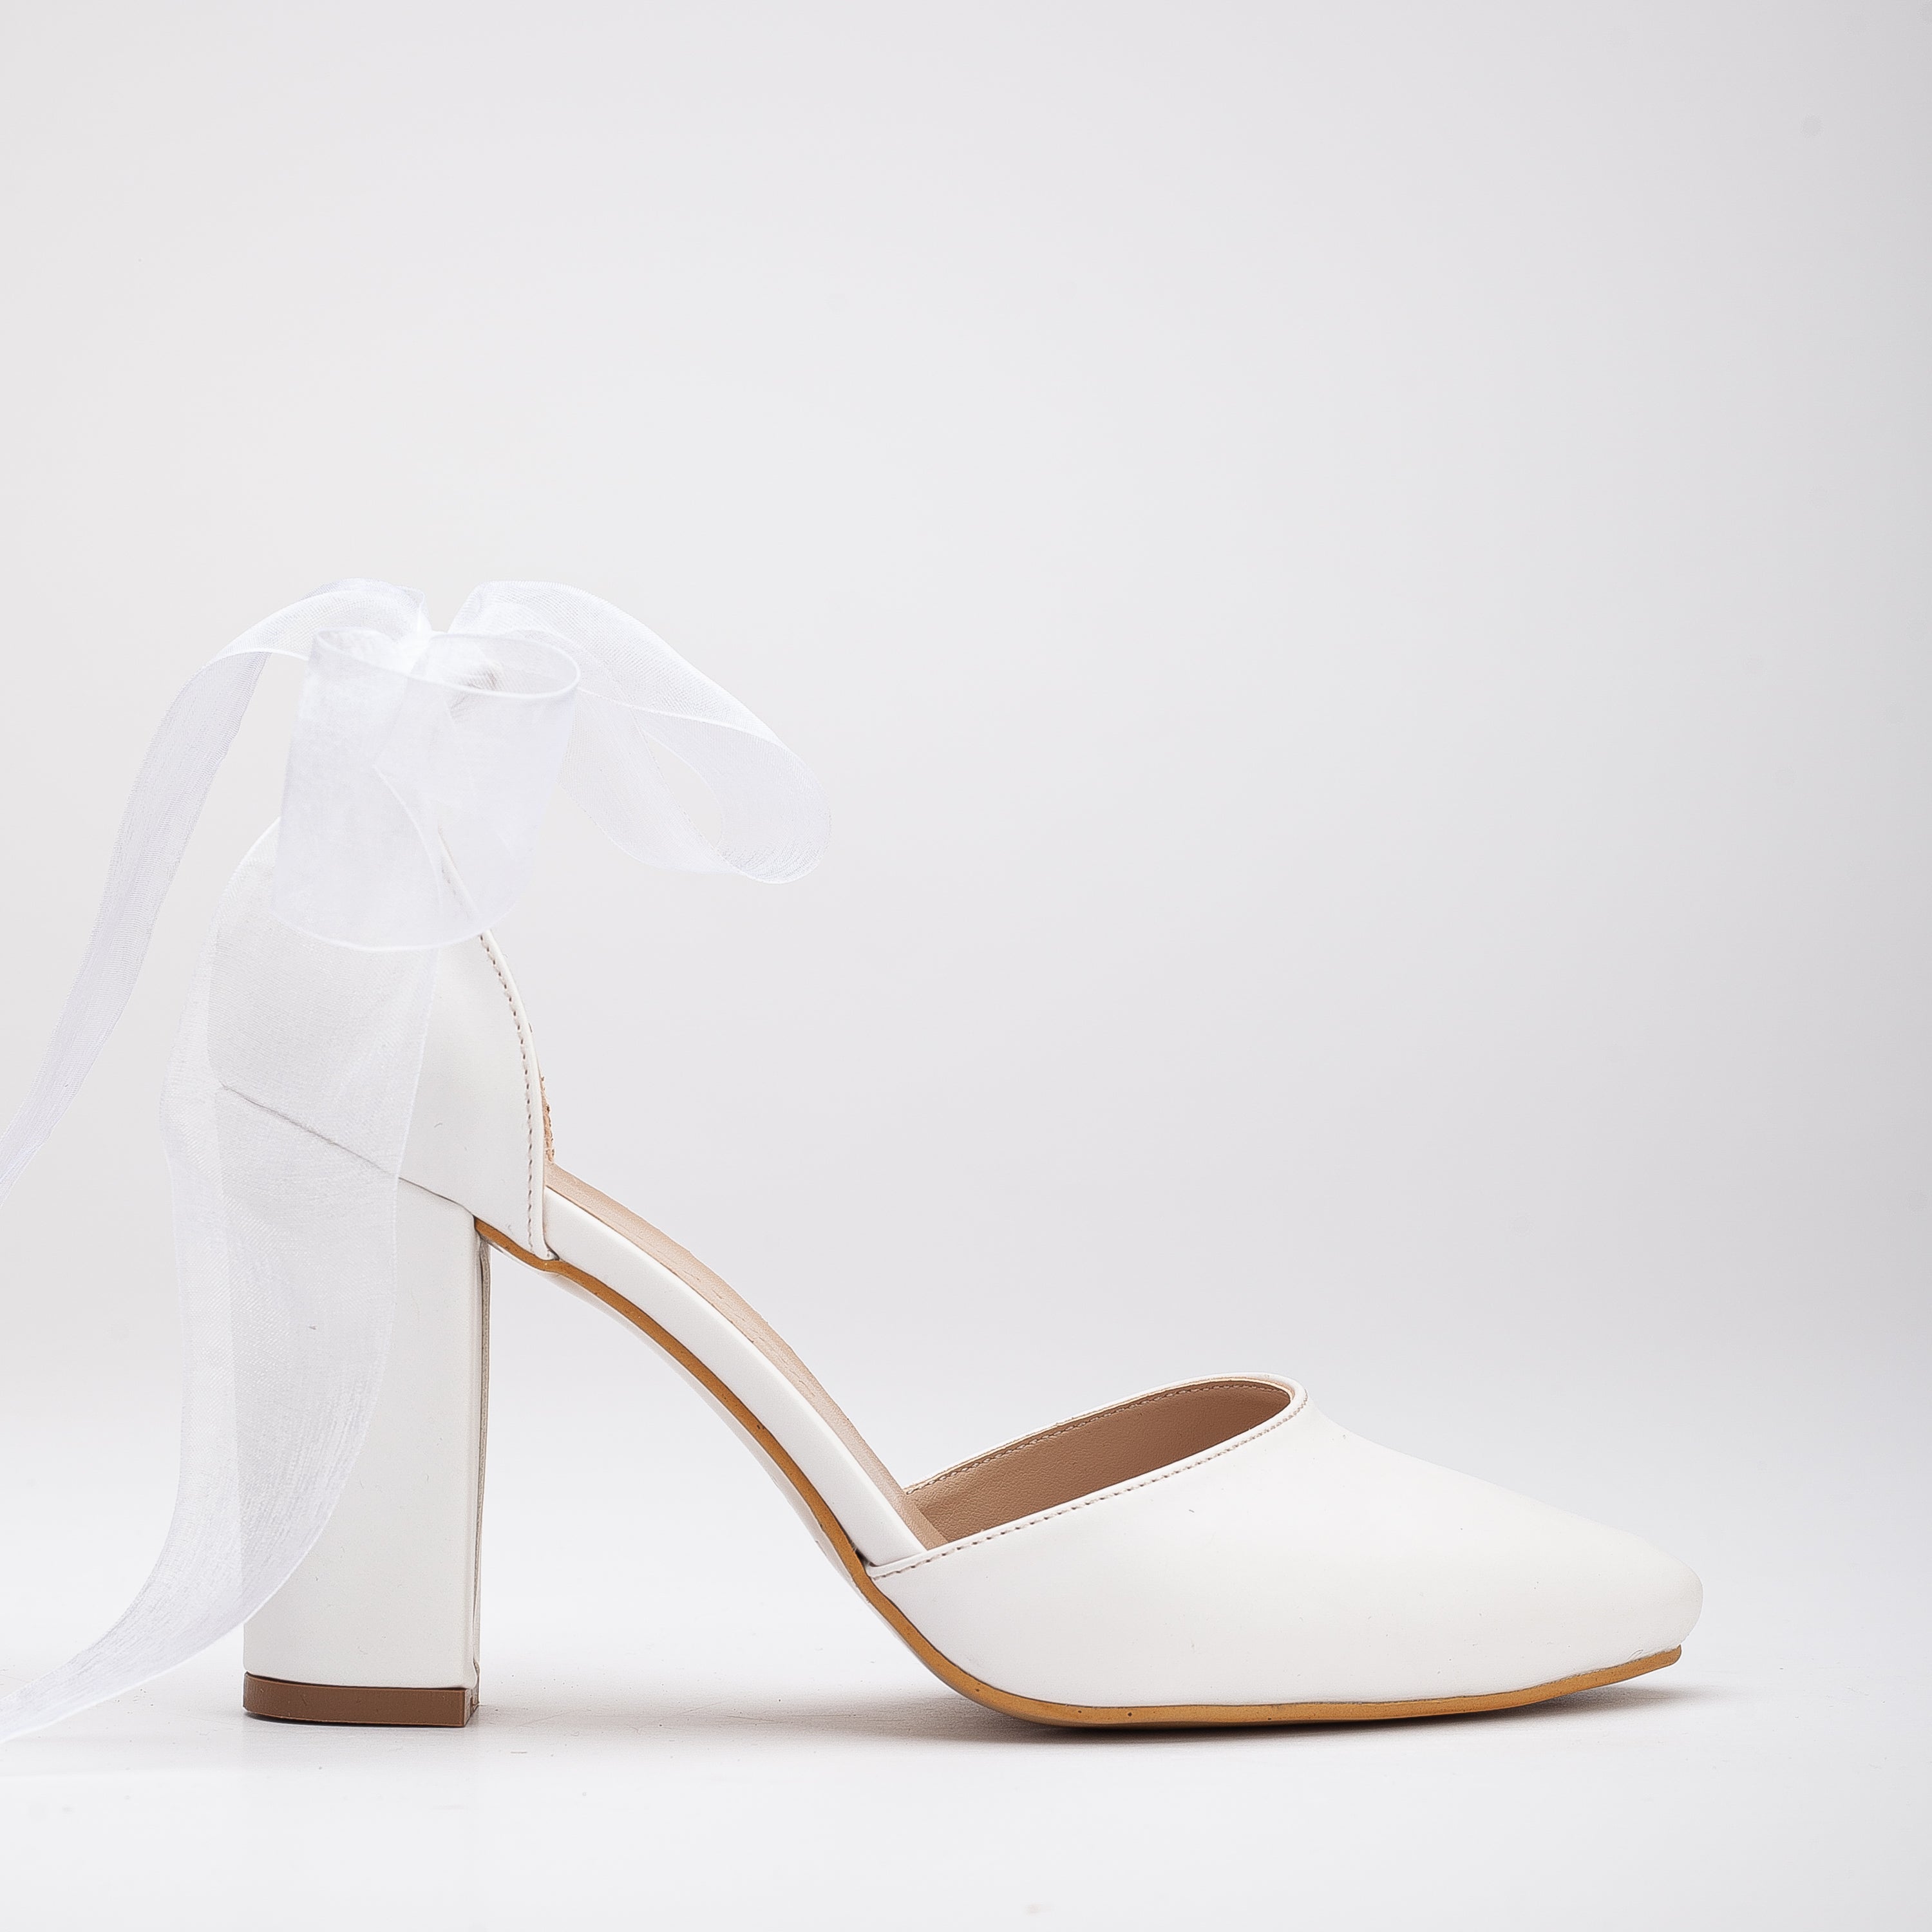 Gisele - White Wedding Shoes with Ribbon